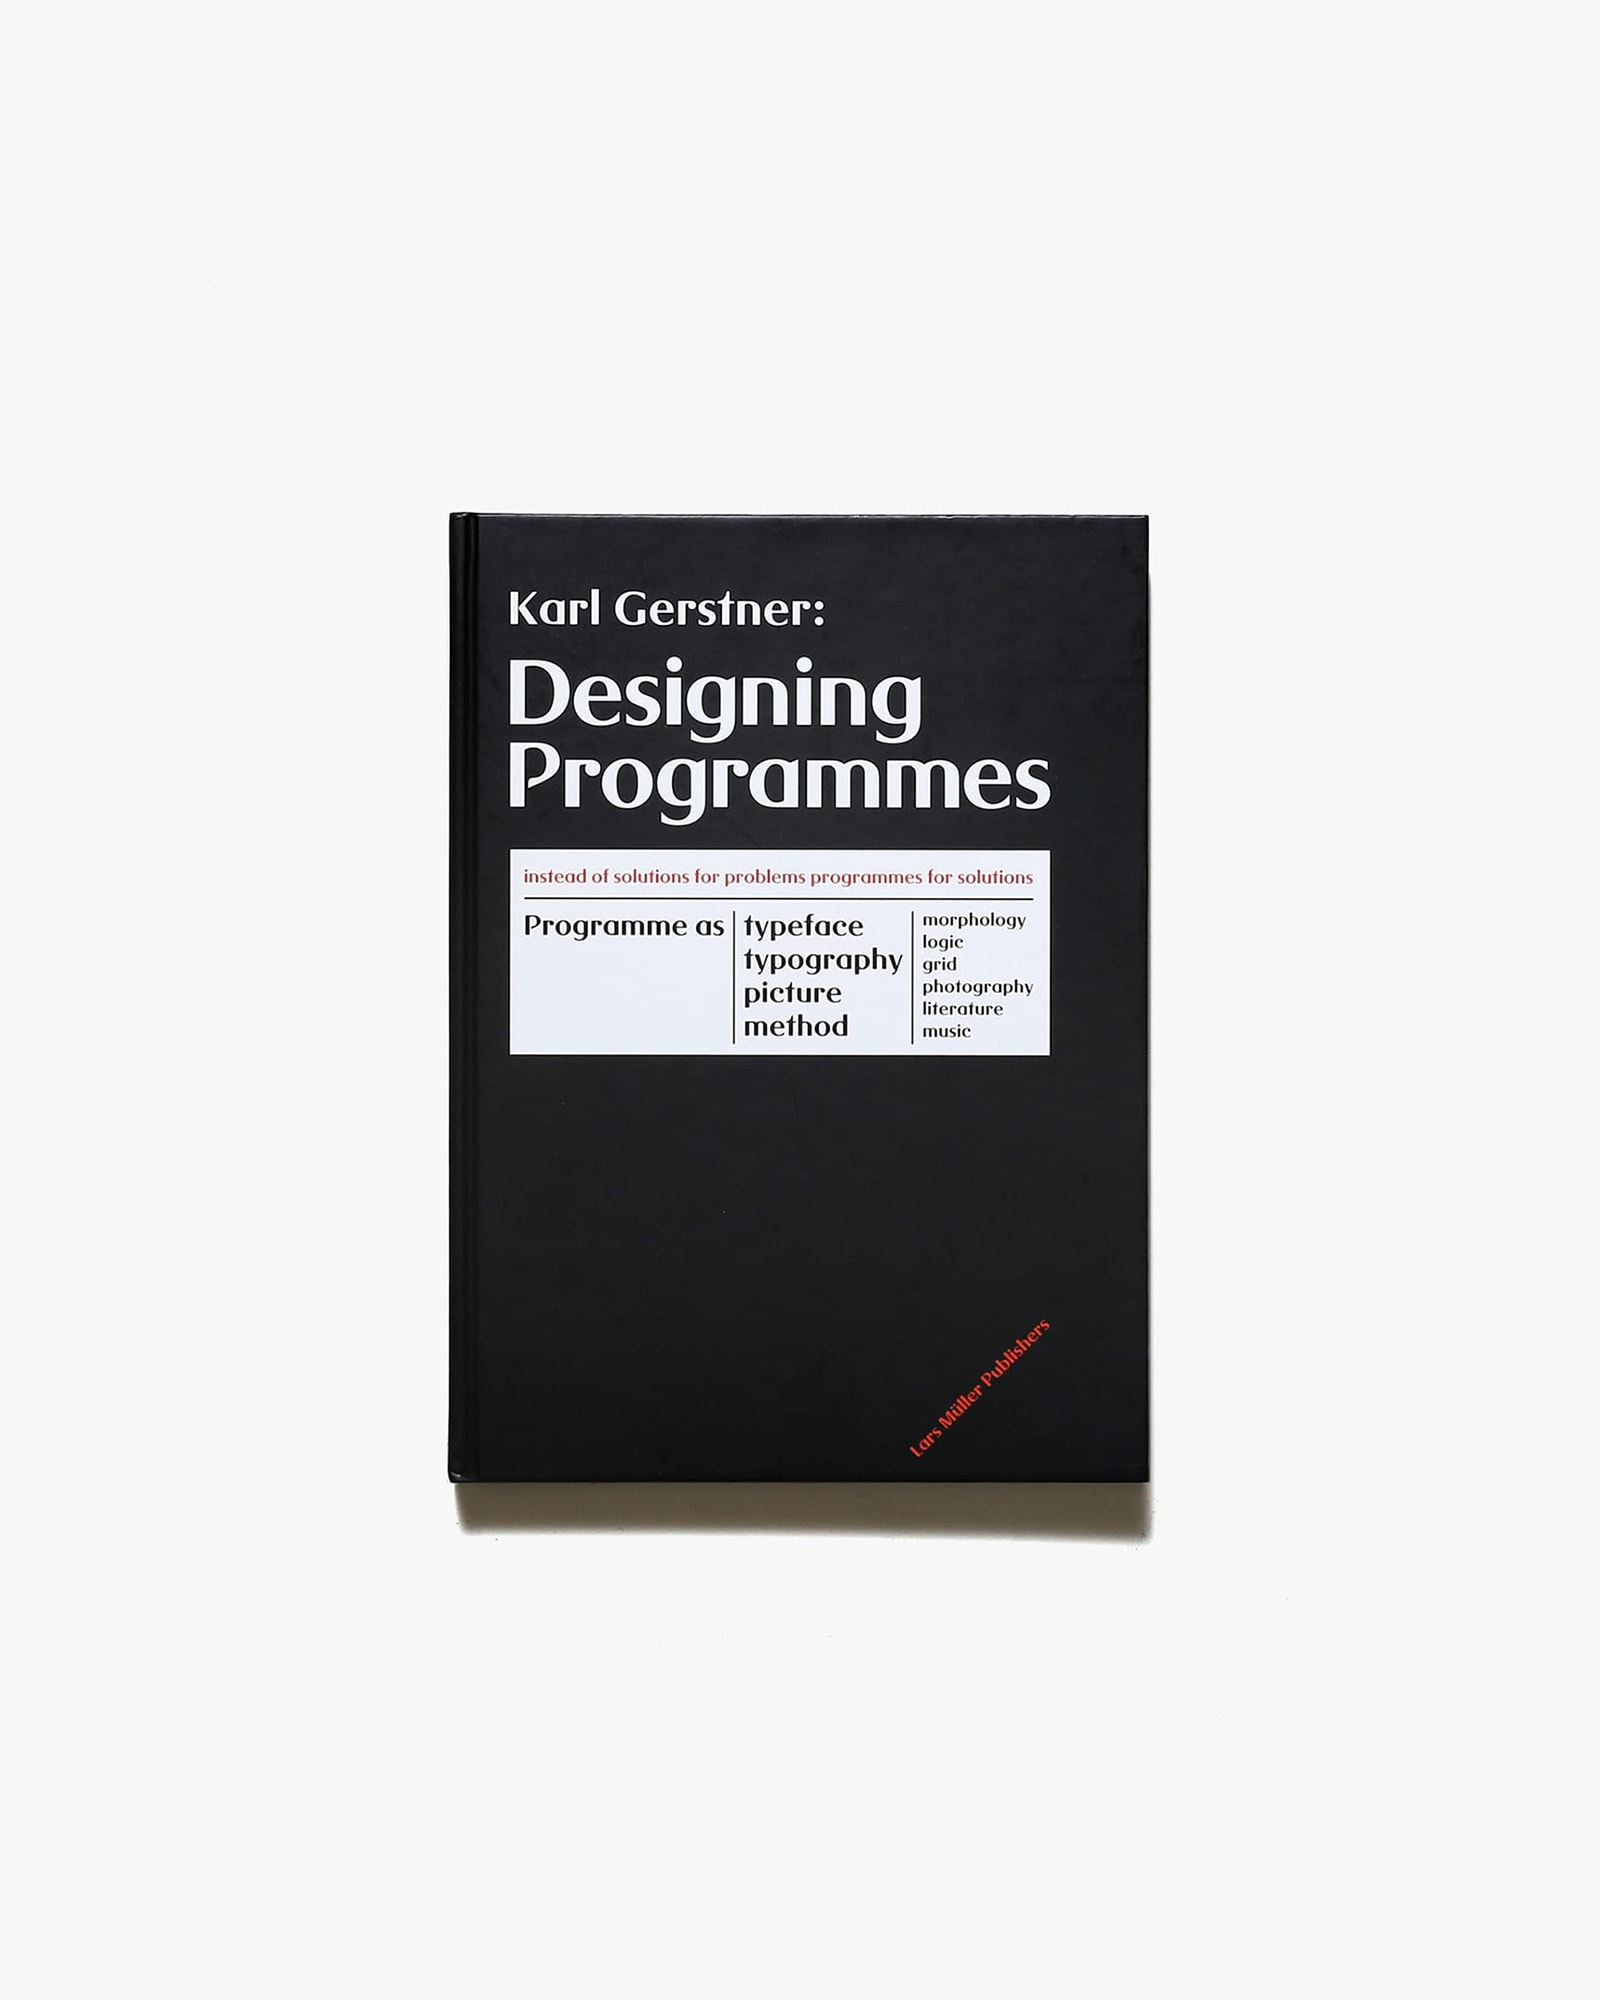 Karl Gerstner: Designing Programmes